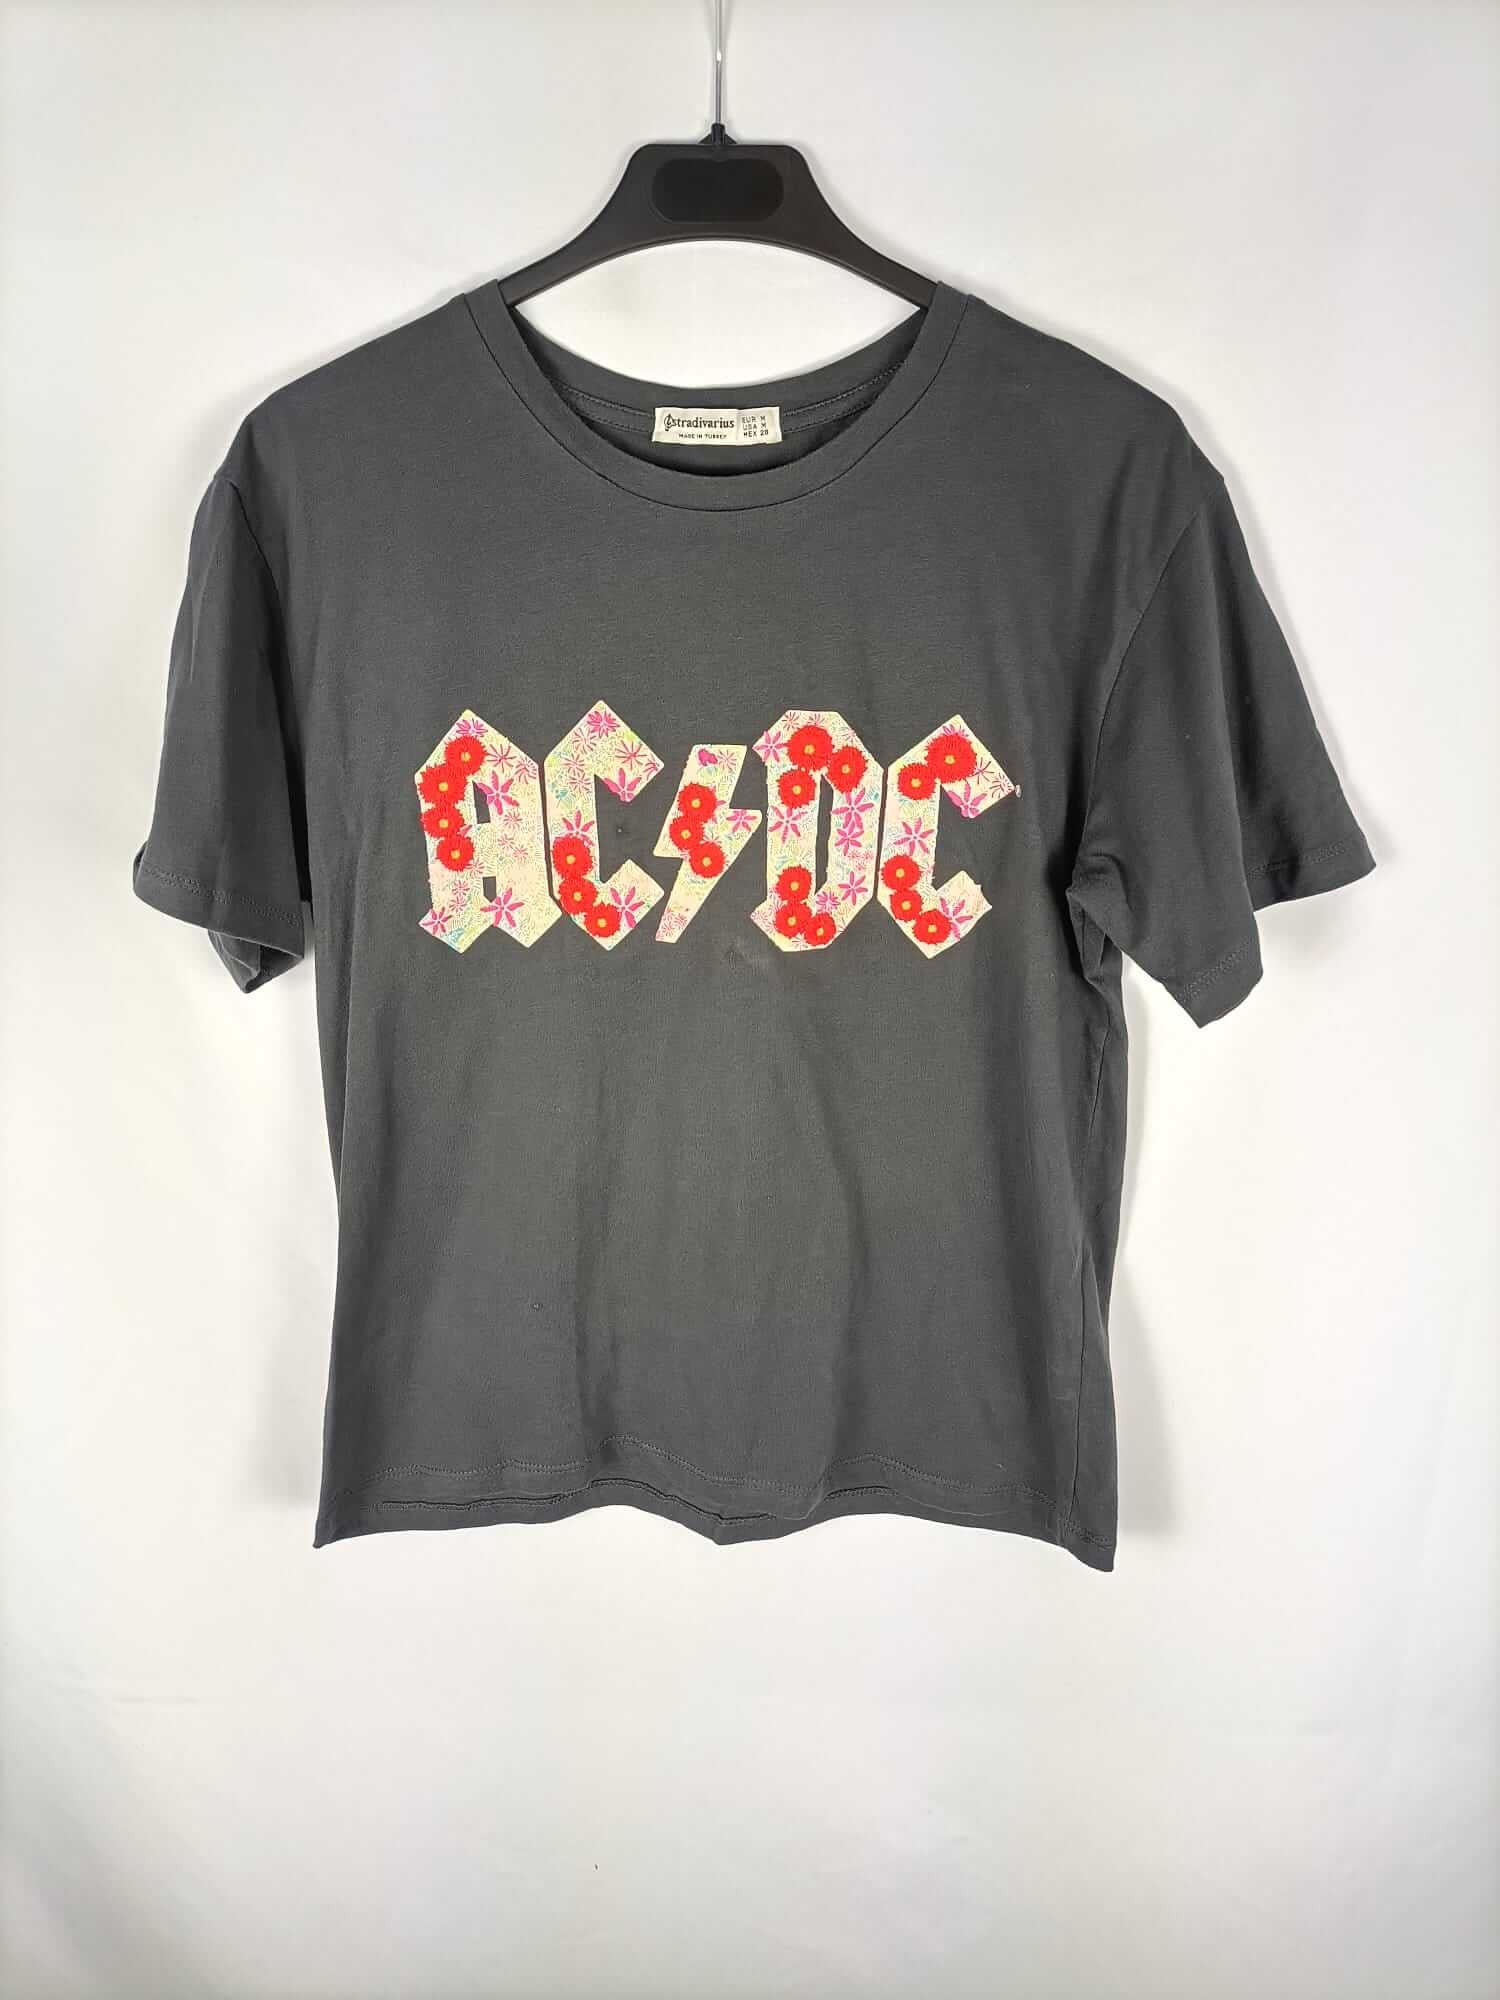 STRADIVARIUS. Camiseta gris logo ACDC T. m Hibuy market